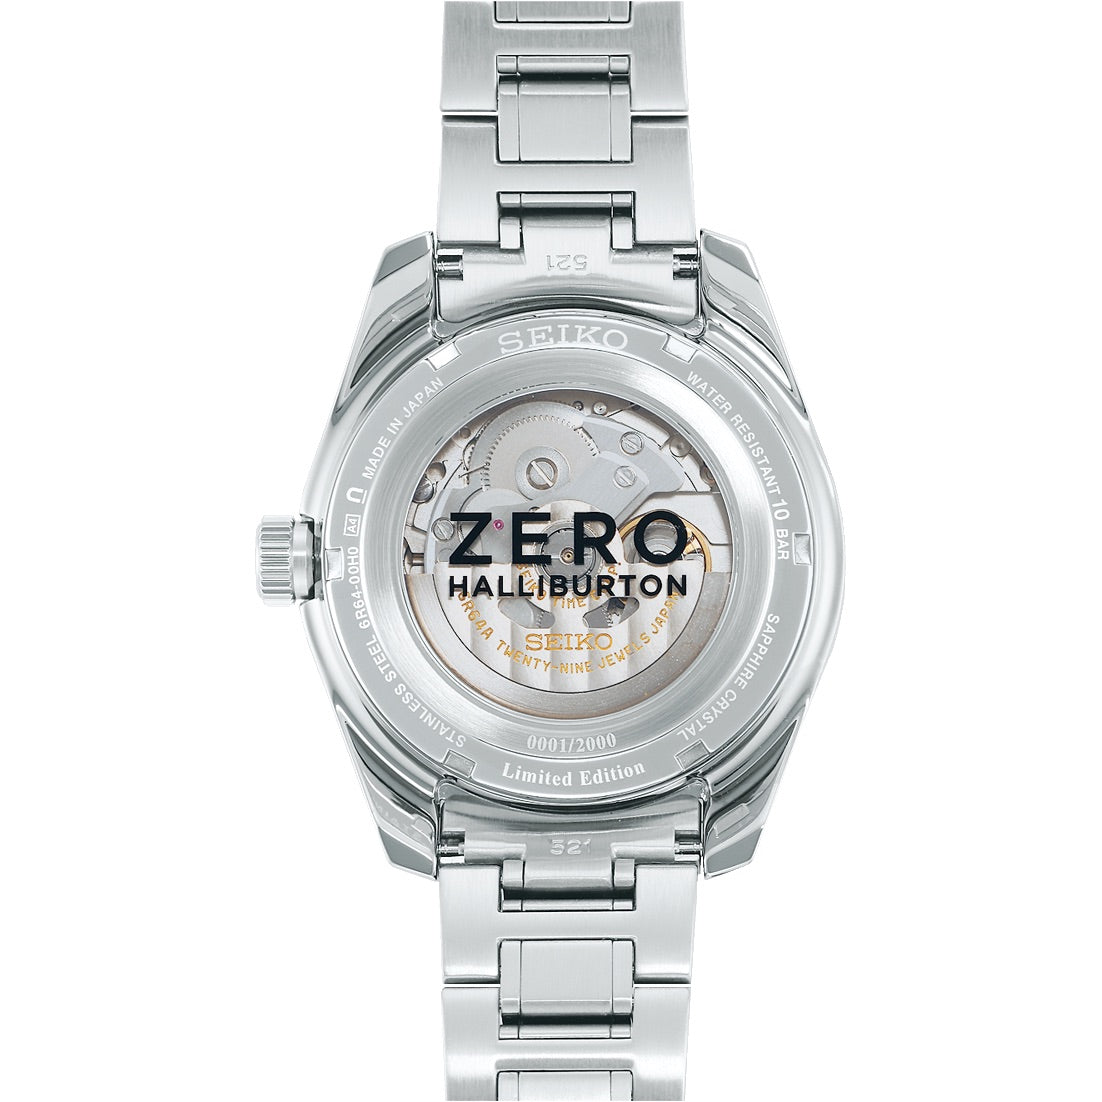 Seiko Presage GMT - Zero Halliburton Limited Edition